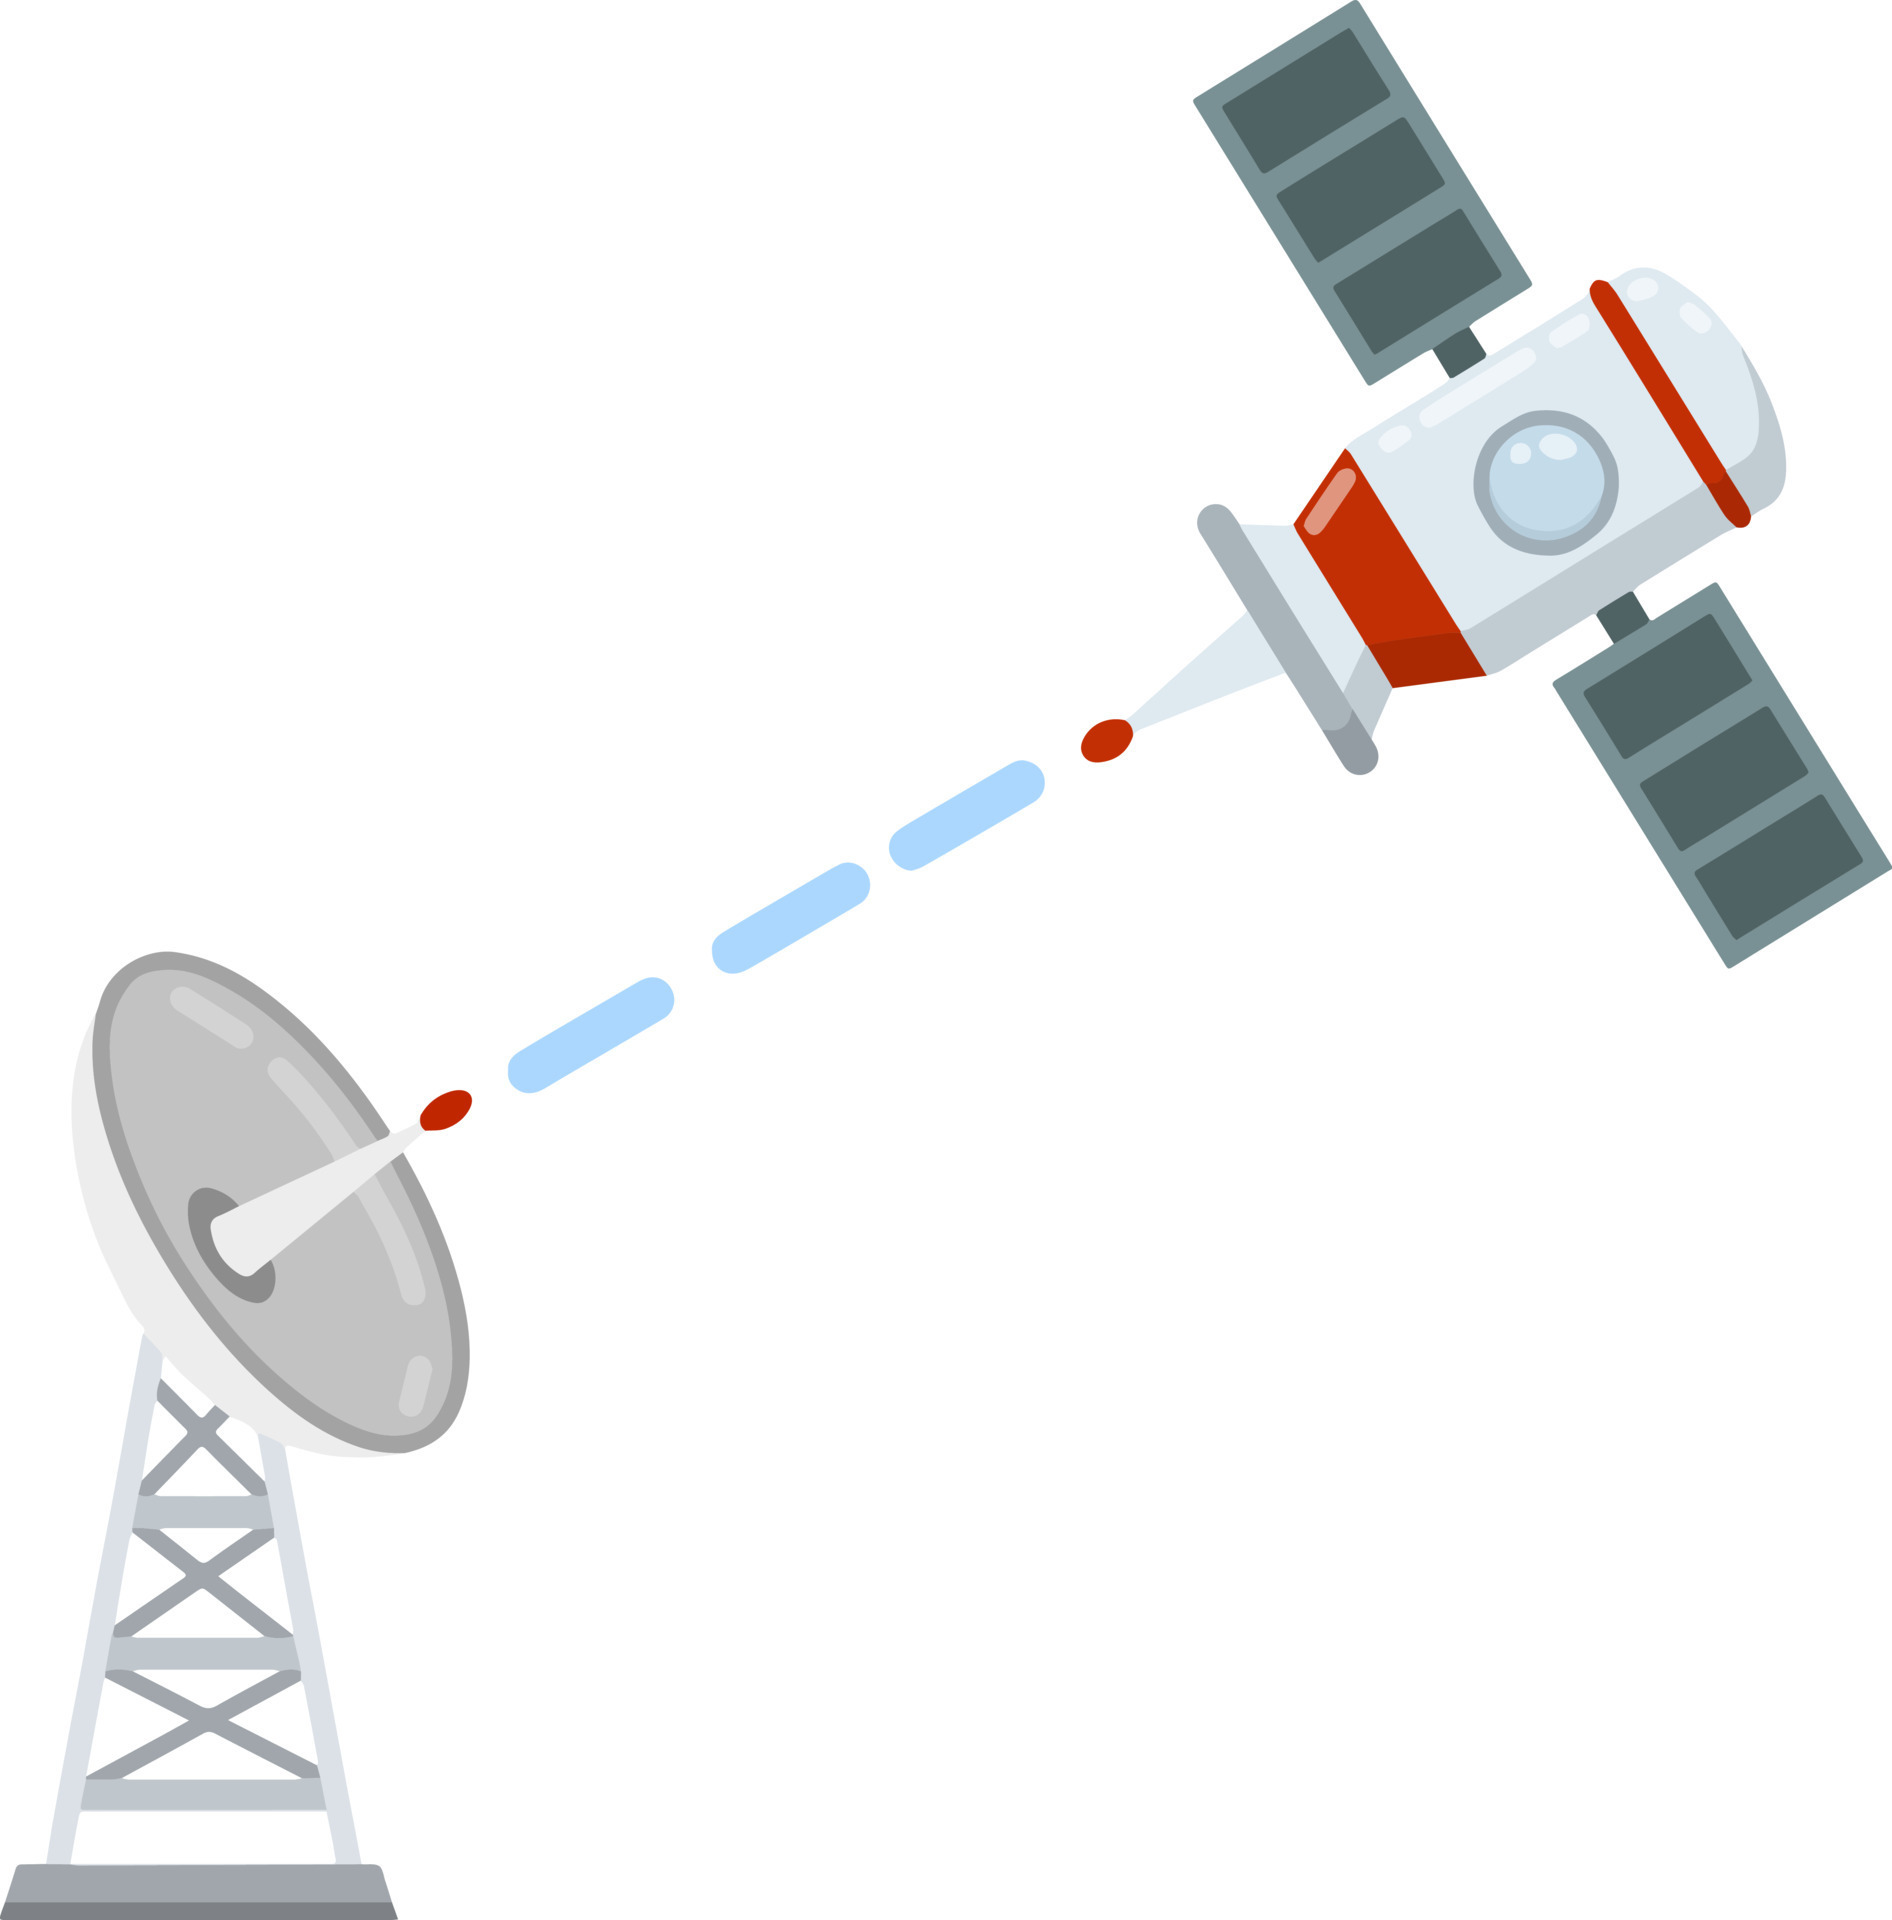 Antenne zum Empfang Radio und Fernsehen Signale. Radar Turm. Radio Wellen.  Kommunikation mit ein Raum Satellit im Orbit. isoliert eben Raumschiff  22729557 Vektor Kunst bei Vecteezy